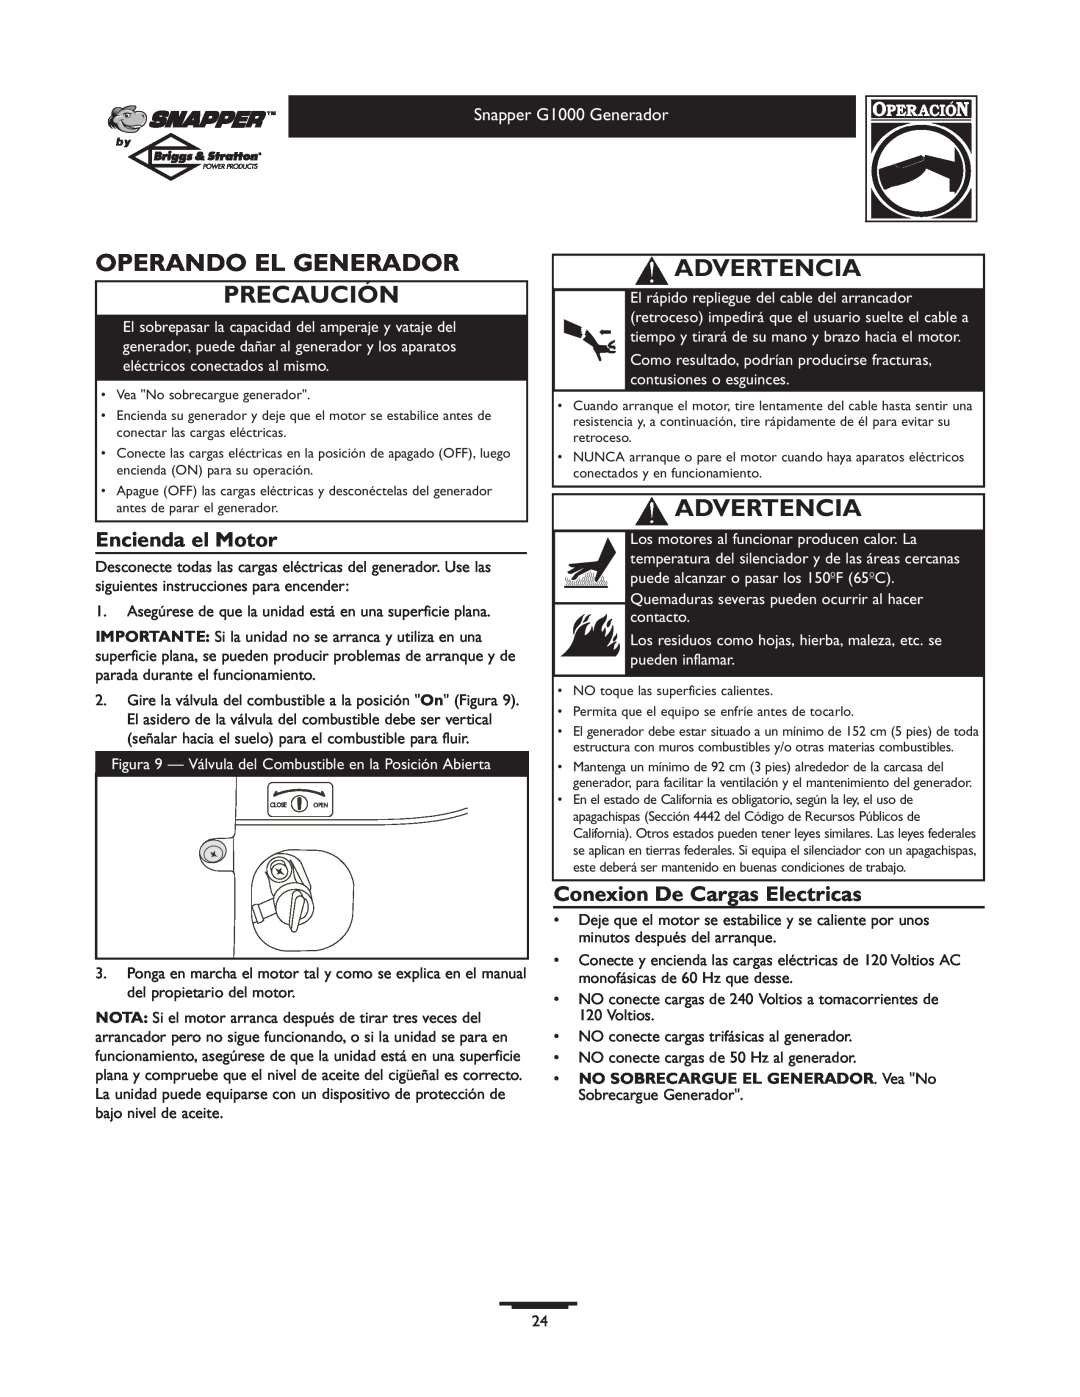 Snapper G1000 owner manual Operando El Generador Precaución, Encienda el Motor, Conexion De Cargas Electricas, Advertencia 